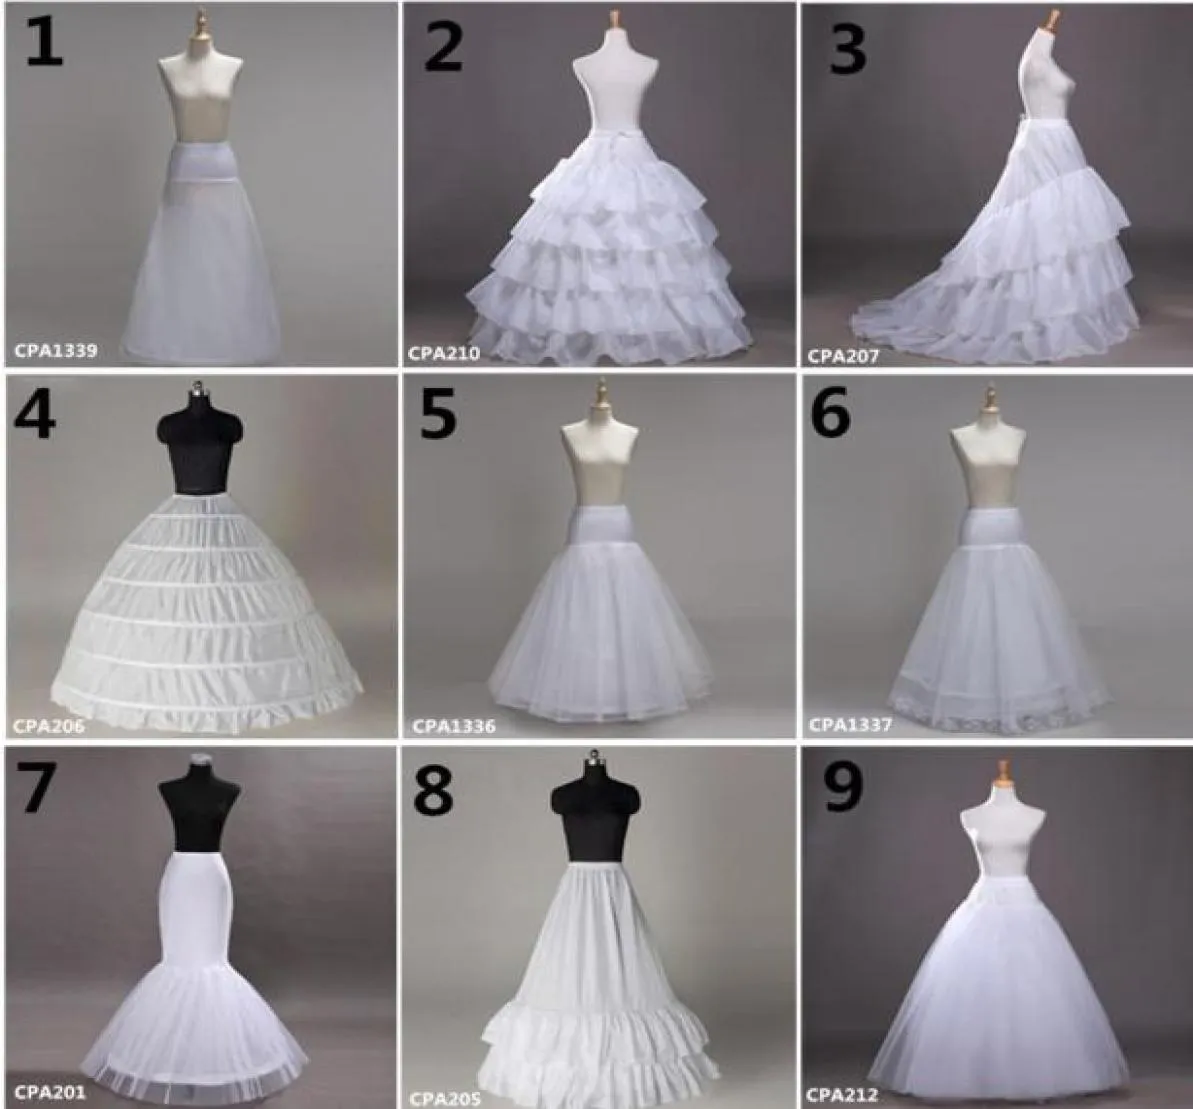 9 Style entier 6 cerceaux Bridal Wedding Petticoat Mariage Gauze jupe Crinoline Couper accessoires de mariage Jupon Sxjun107448057